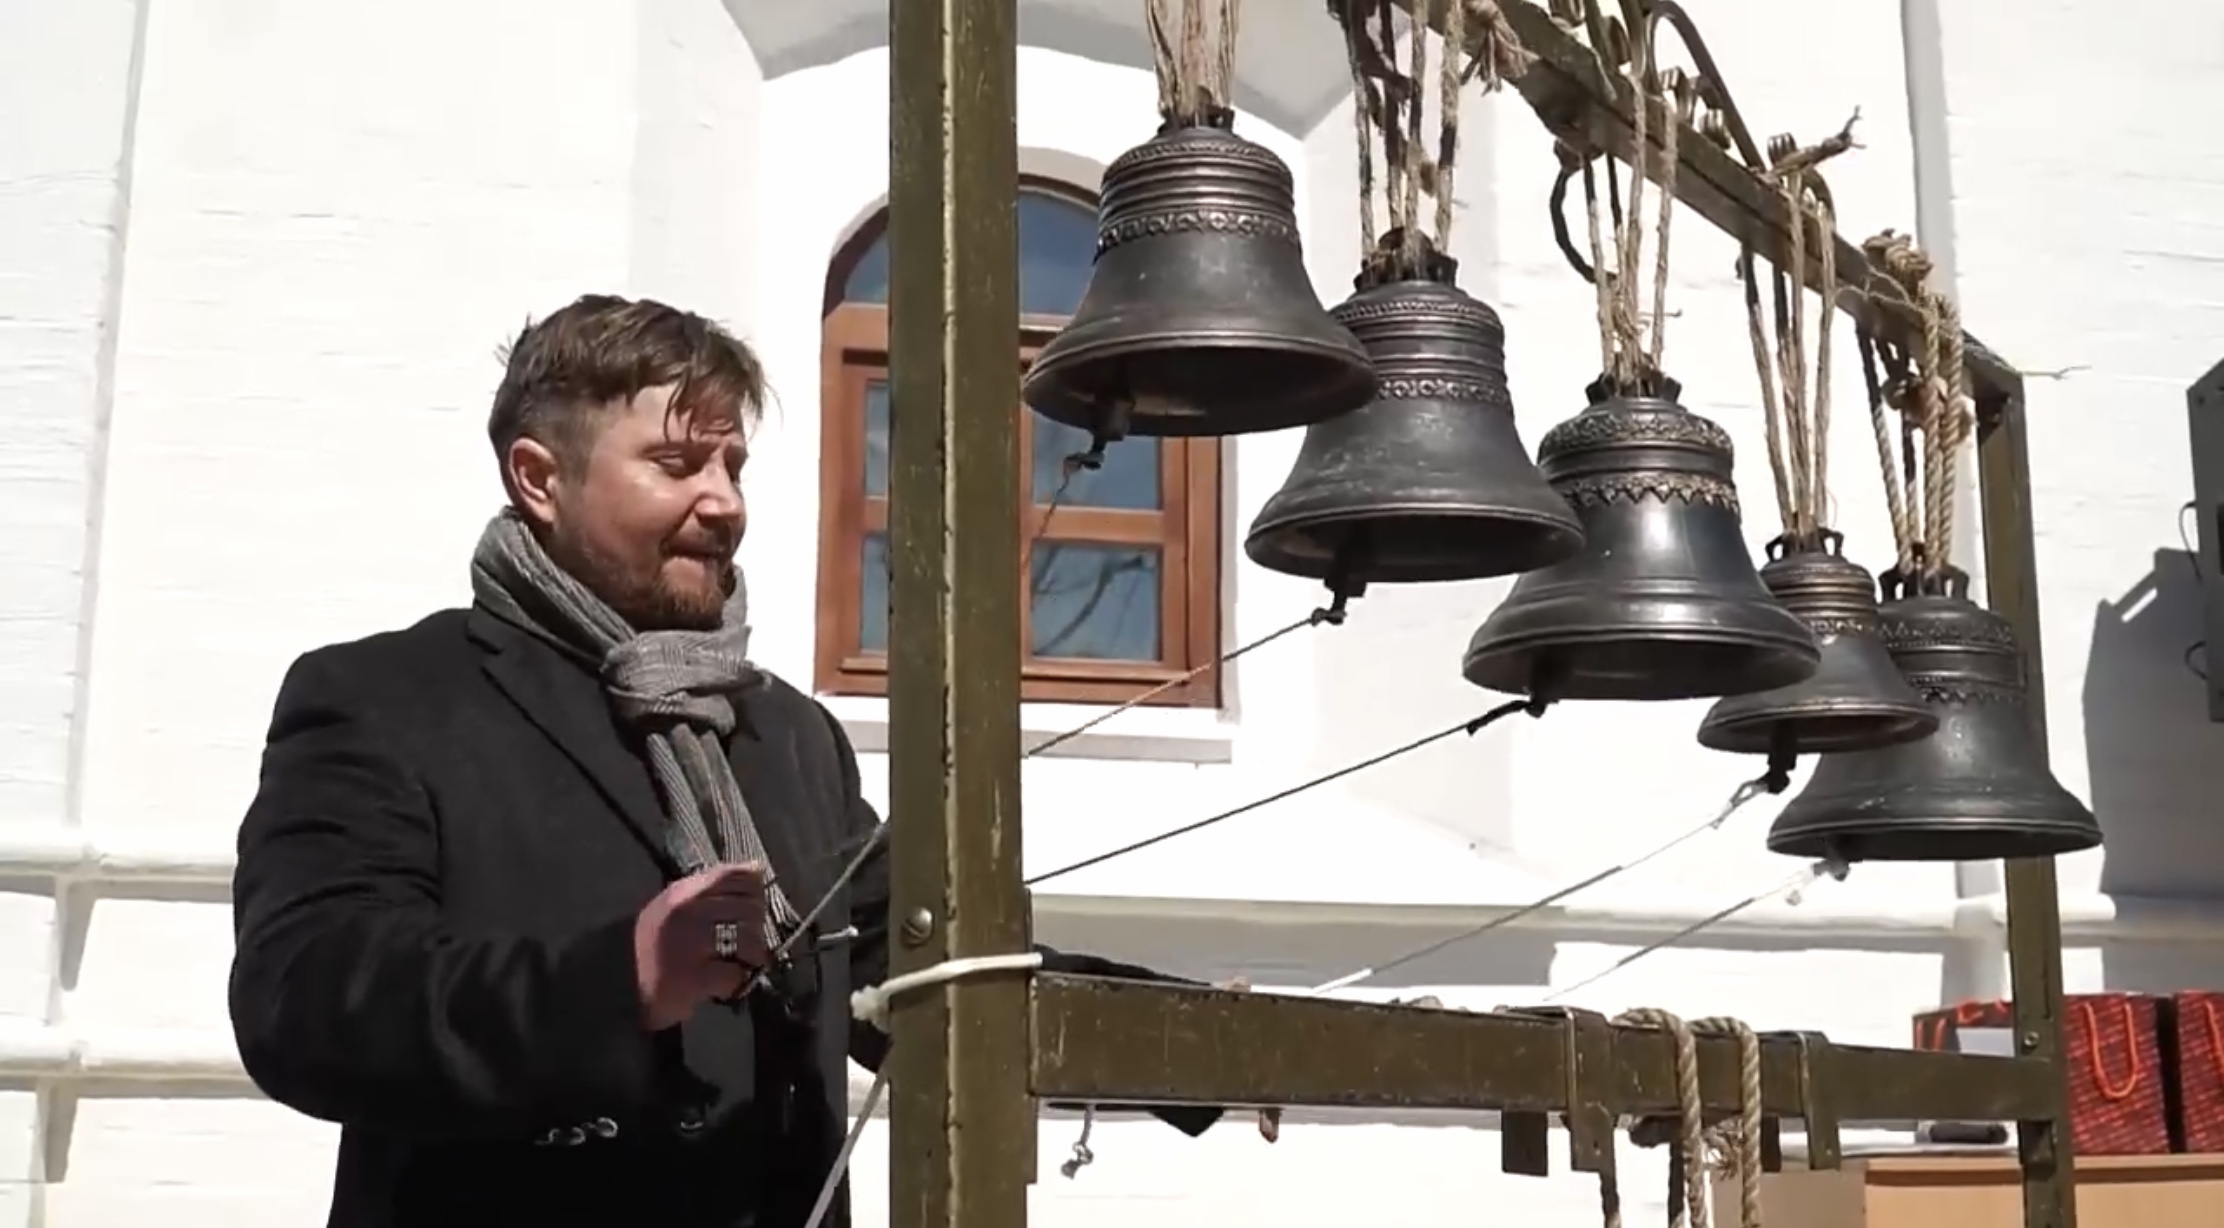 Била звон. Огромный колокол. Колокола в храме. Звон колоколов. Колокольный перезвон.